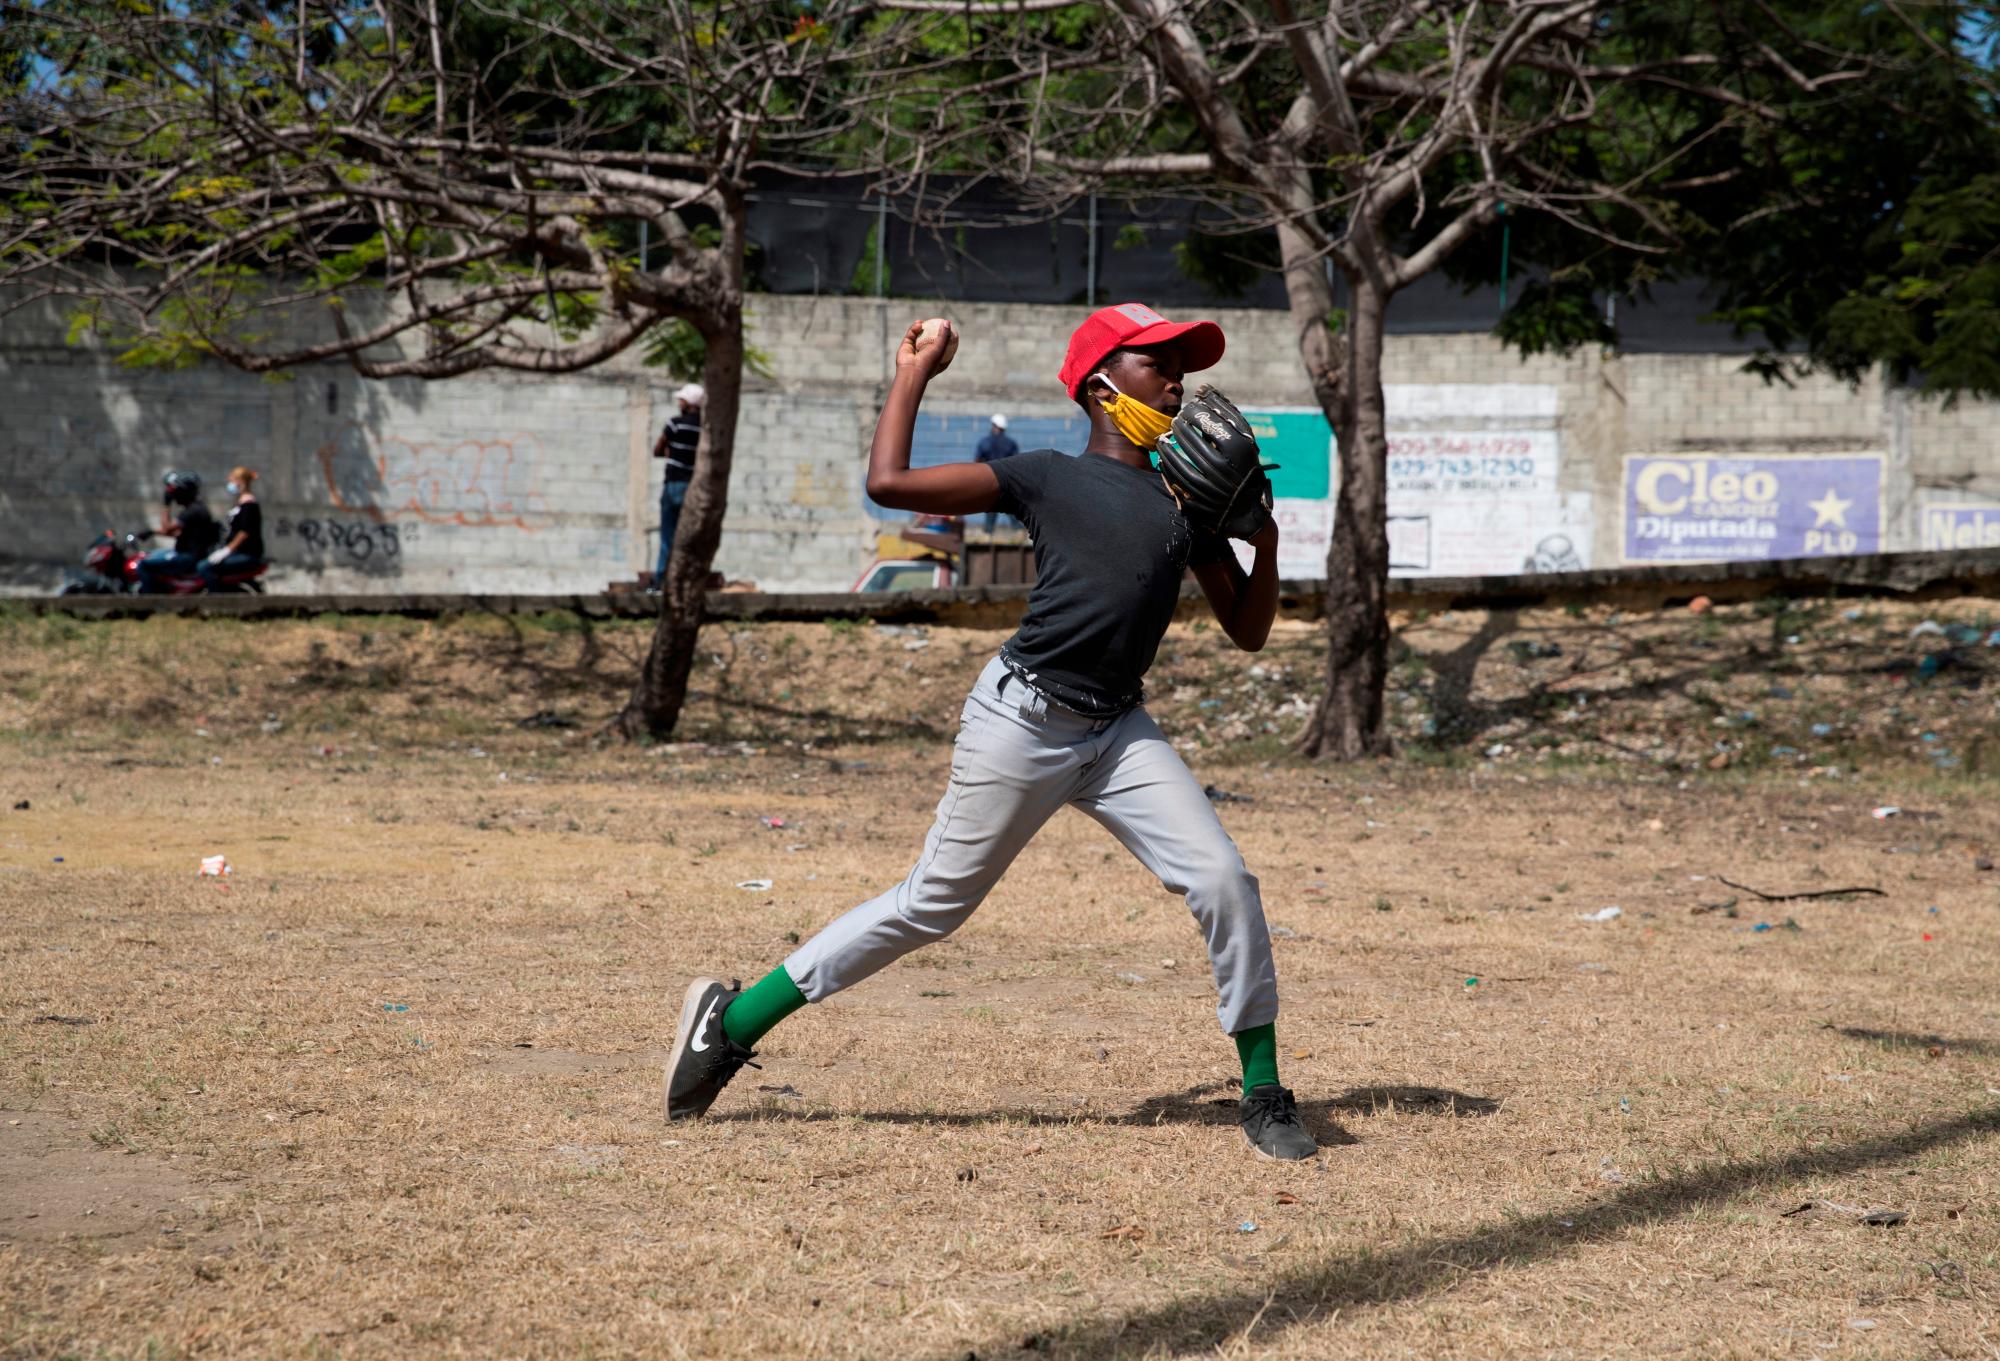 Un joven lanza una pelota durante una practica de béisbol este viernes en un parque en Santo Domingo (República Dominicana). Un batazo tras otro, las pelotas siguen volando en Santo Domingo, una de las principales capitales del béisbol del Caribe. Pero ahora, en tiempos de coronavirus, no vuelan la cerca del play sino que aterrizan en las carreteras o, de vez en cuando, en los faros de un automóvil. Y es que la pandemia ha obligado al béisbol amateur a buscar refugio en las calles, en los descampados, lejos de las canchas, cerradas hace ya dos meses. EFE/Orlando Barría